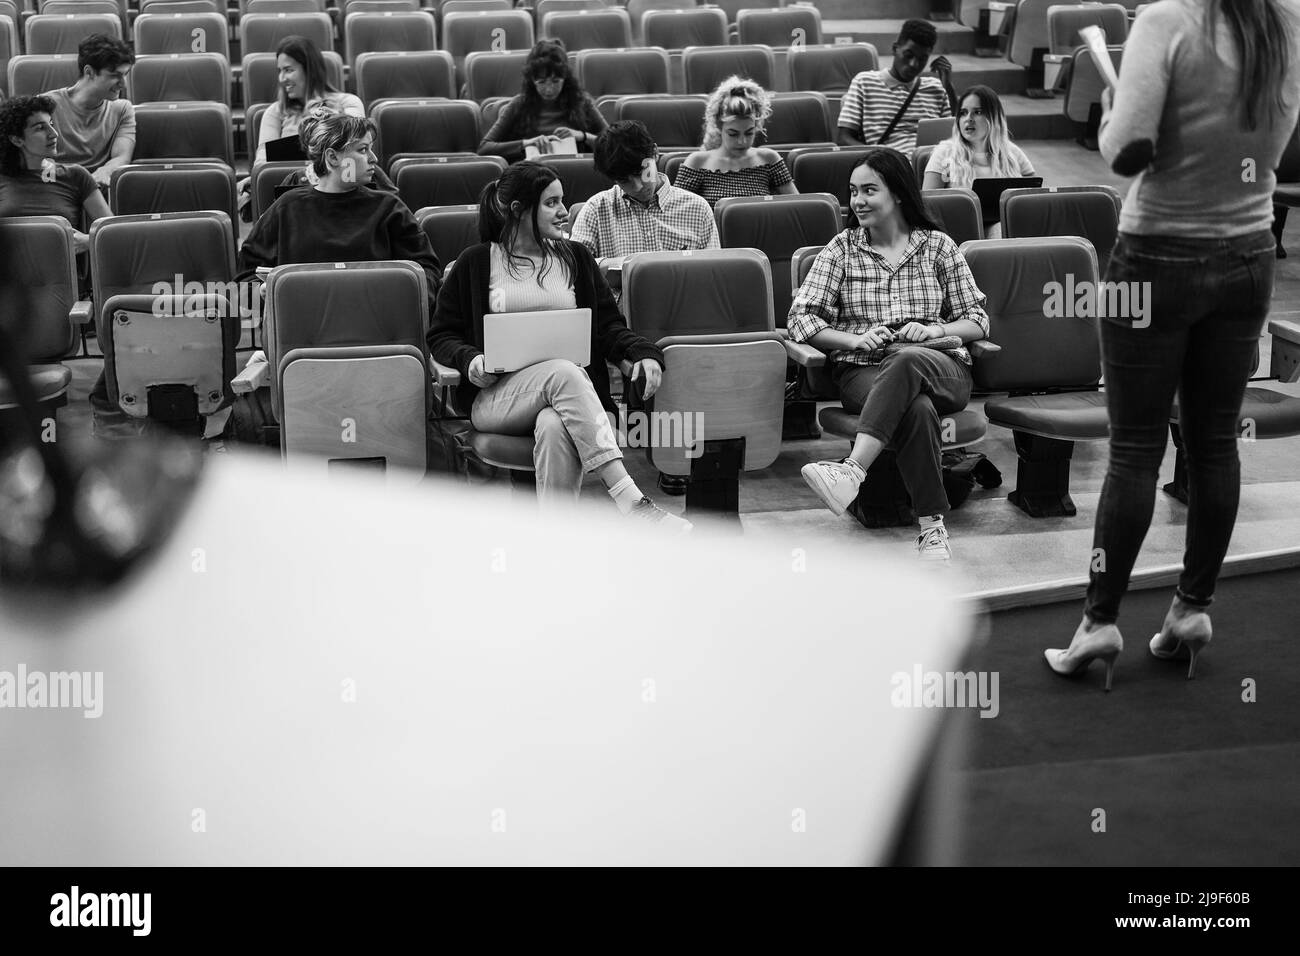 Jeunes étudiants à l'écoute du séminaire de conférence à l'intérieur de l'auditorium de l'université - Focus sur les visages de filles avant - montage noir et blanc Banque D'Images